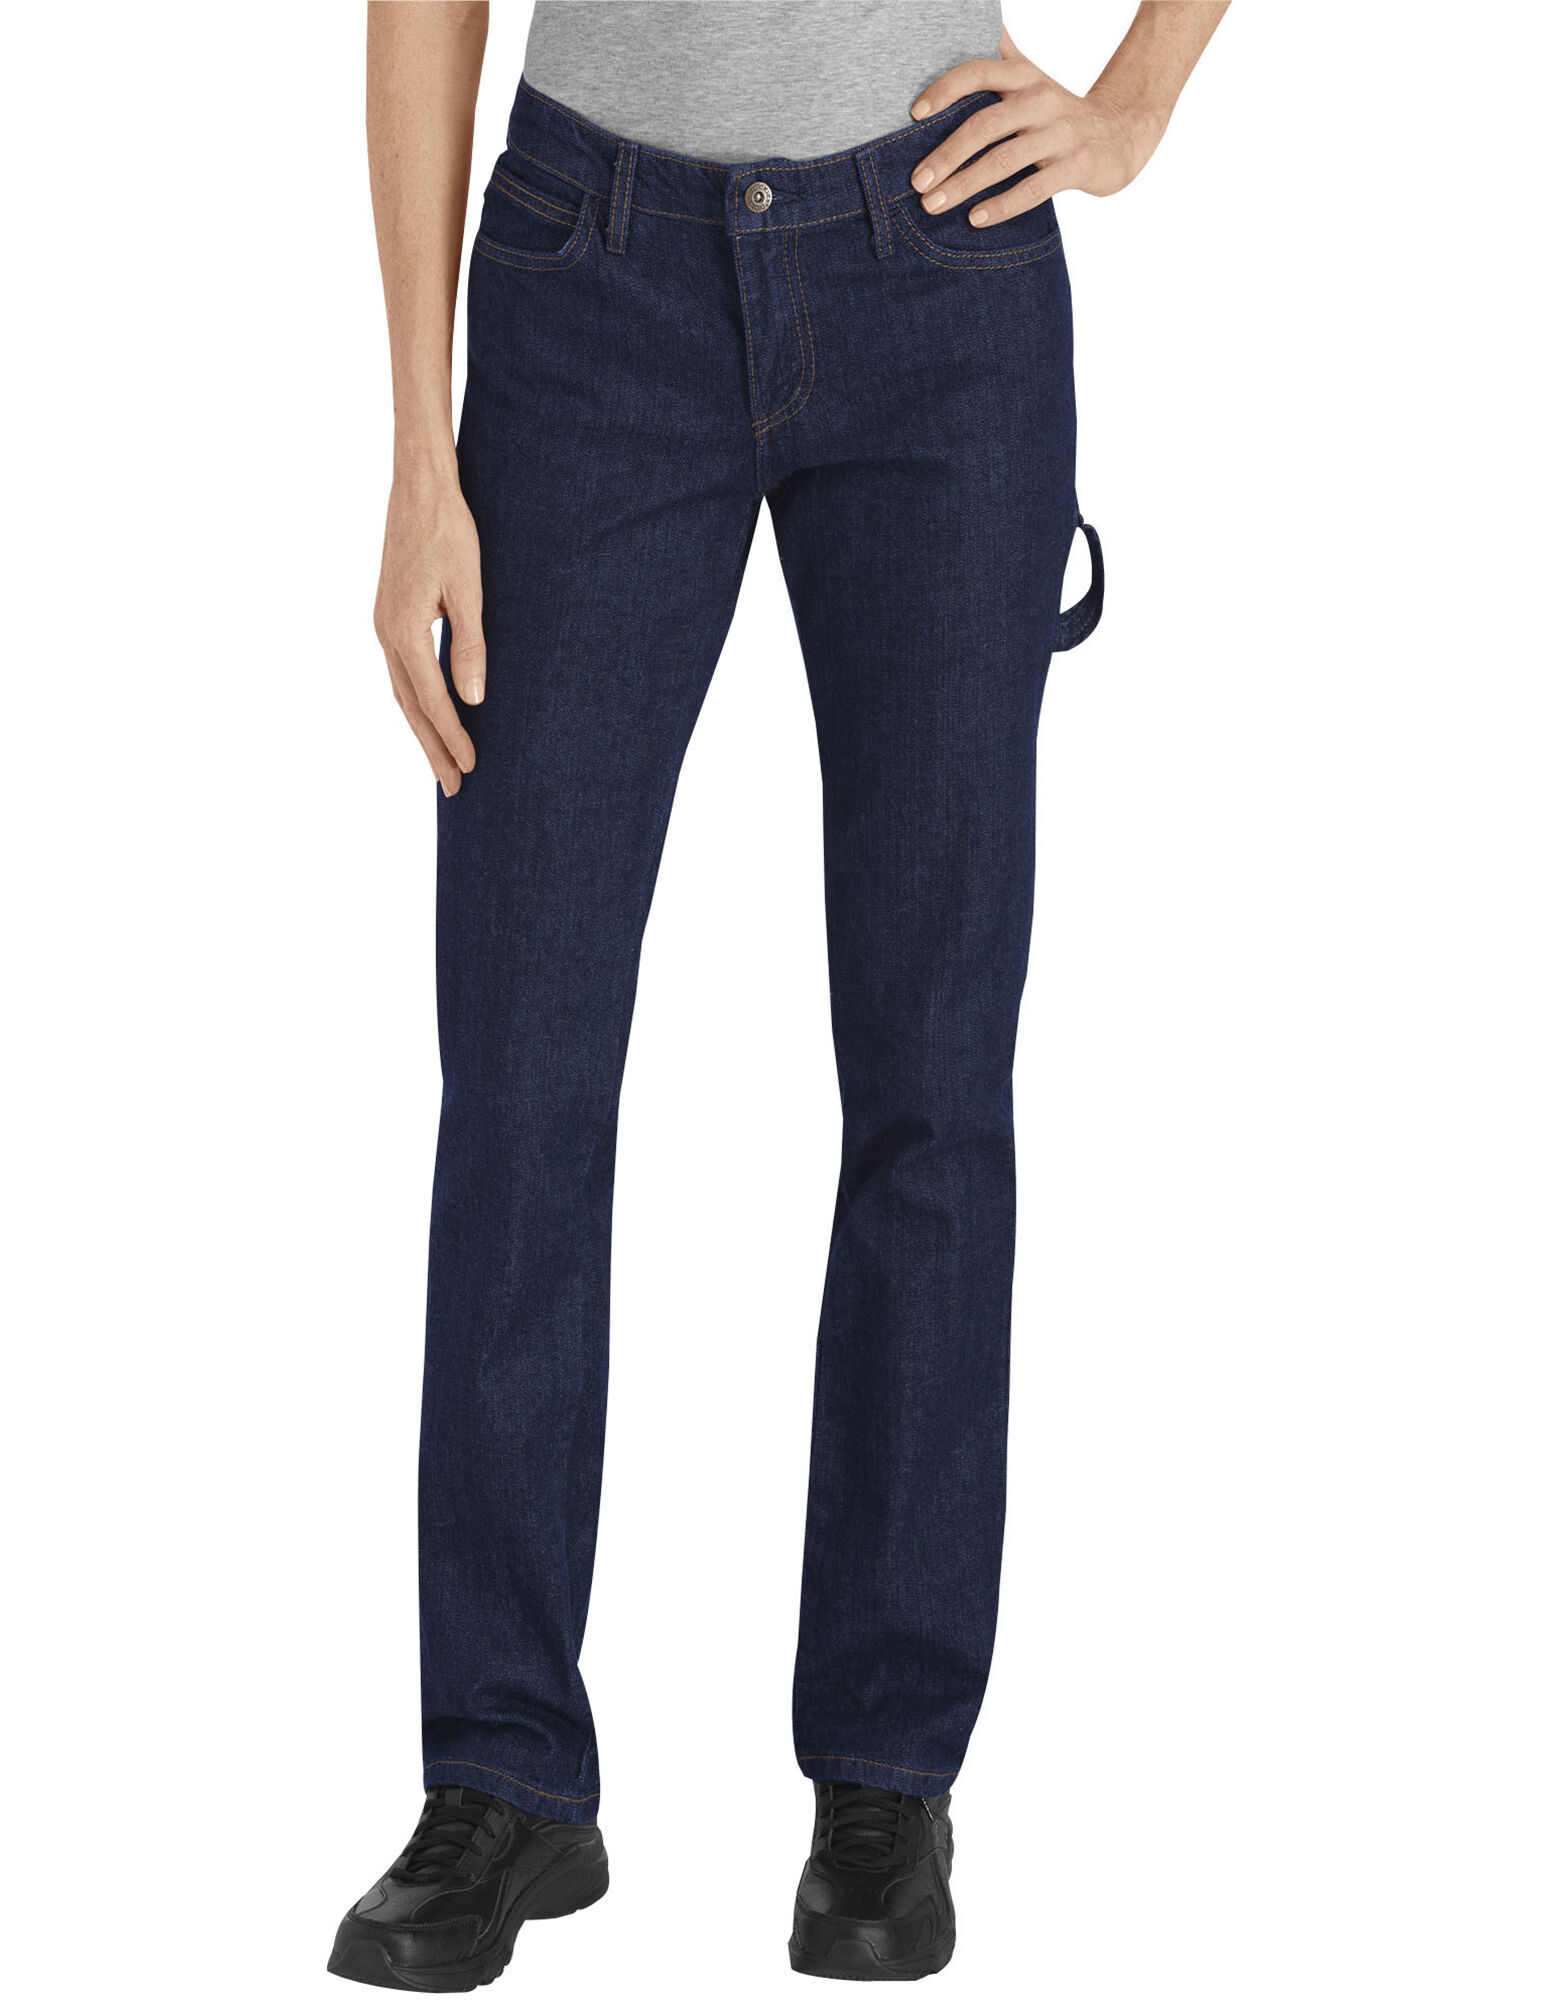 Women's Carpenter Jeans | Dickies